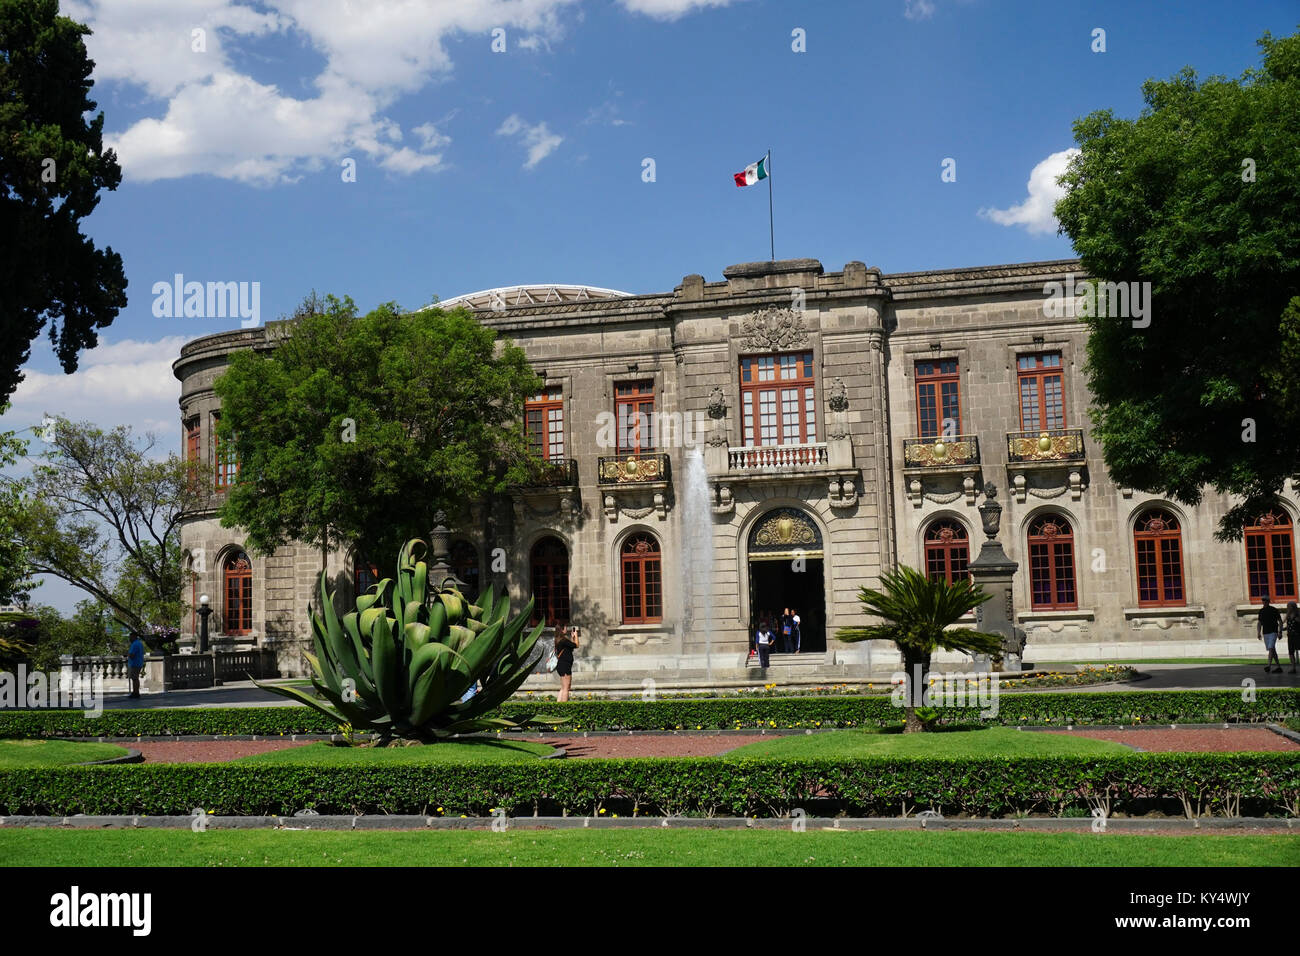 Musée national d'histoire dans le château de Chapultepec (château de Chapultepec), parc de Chapultepec, Mexico, Mexique. Banque D'Images